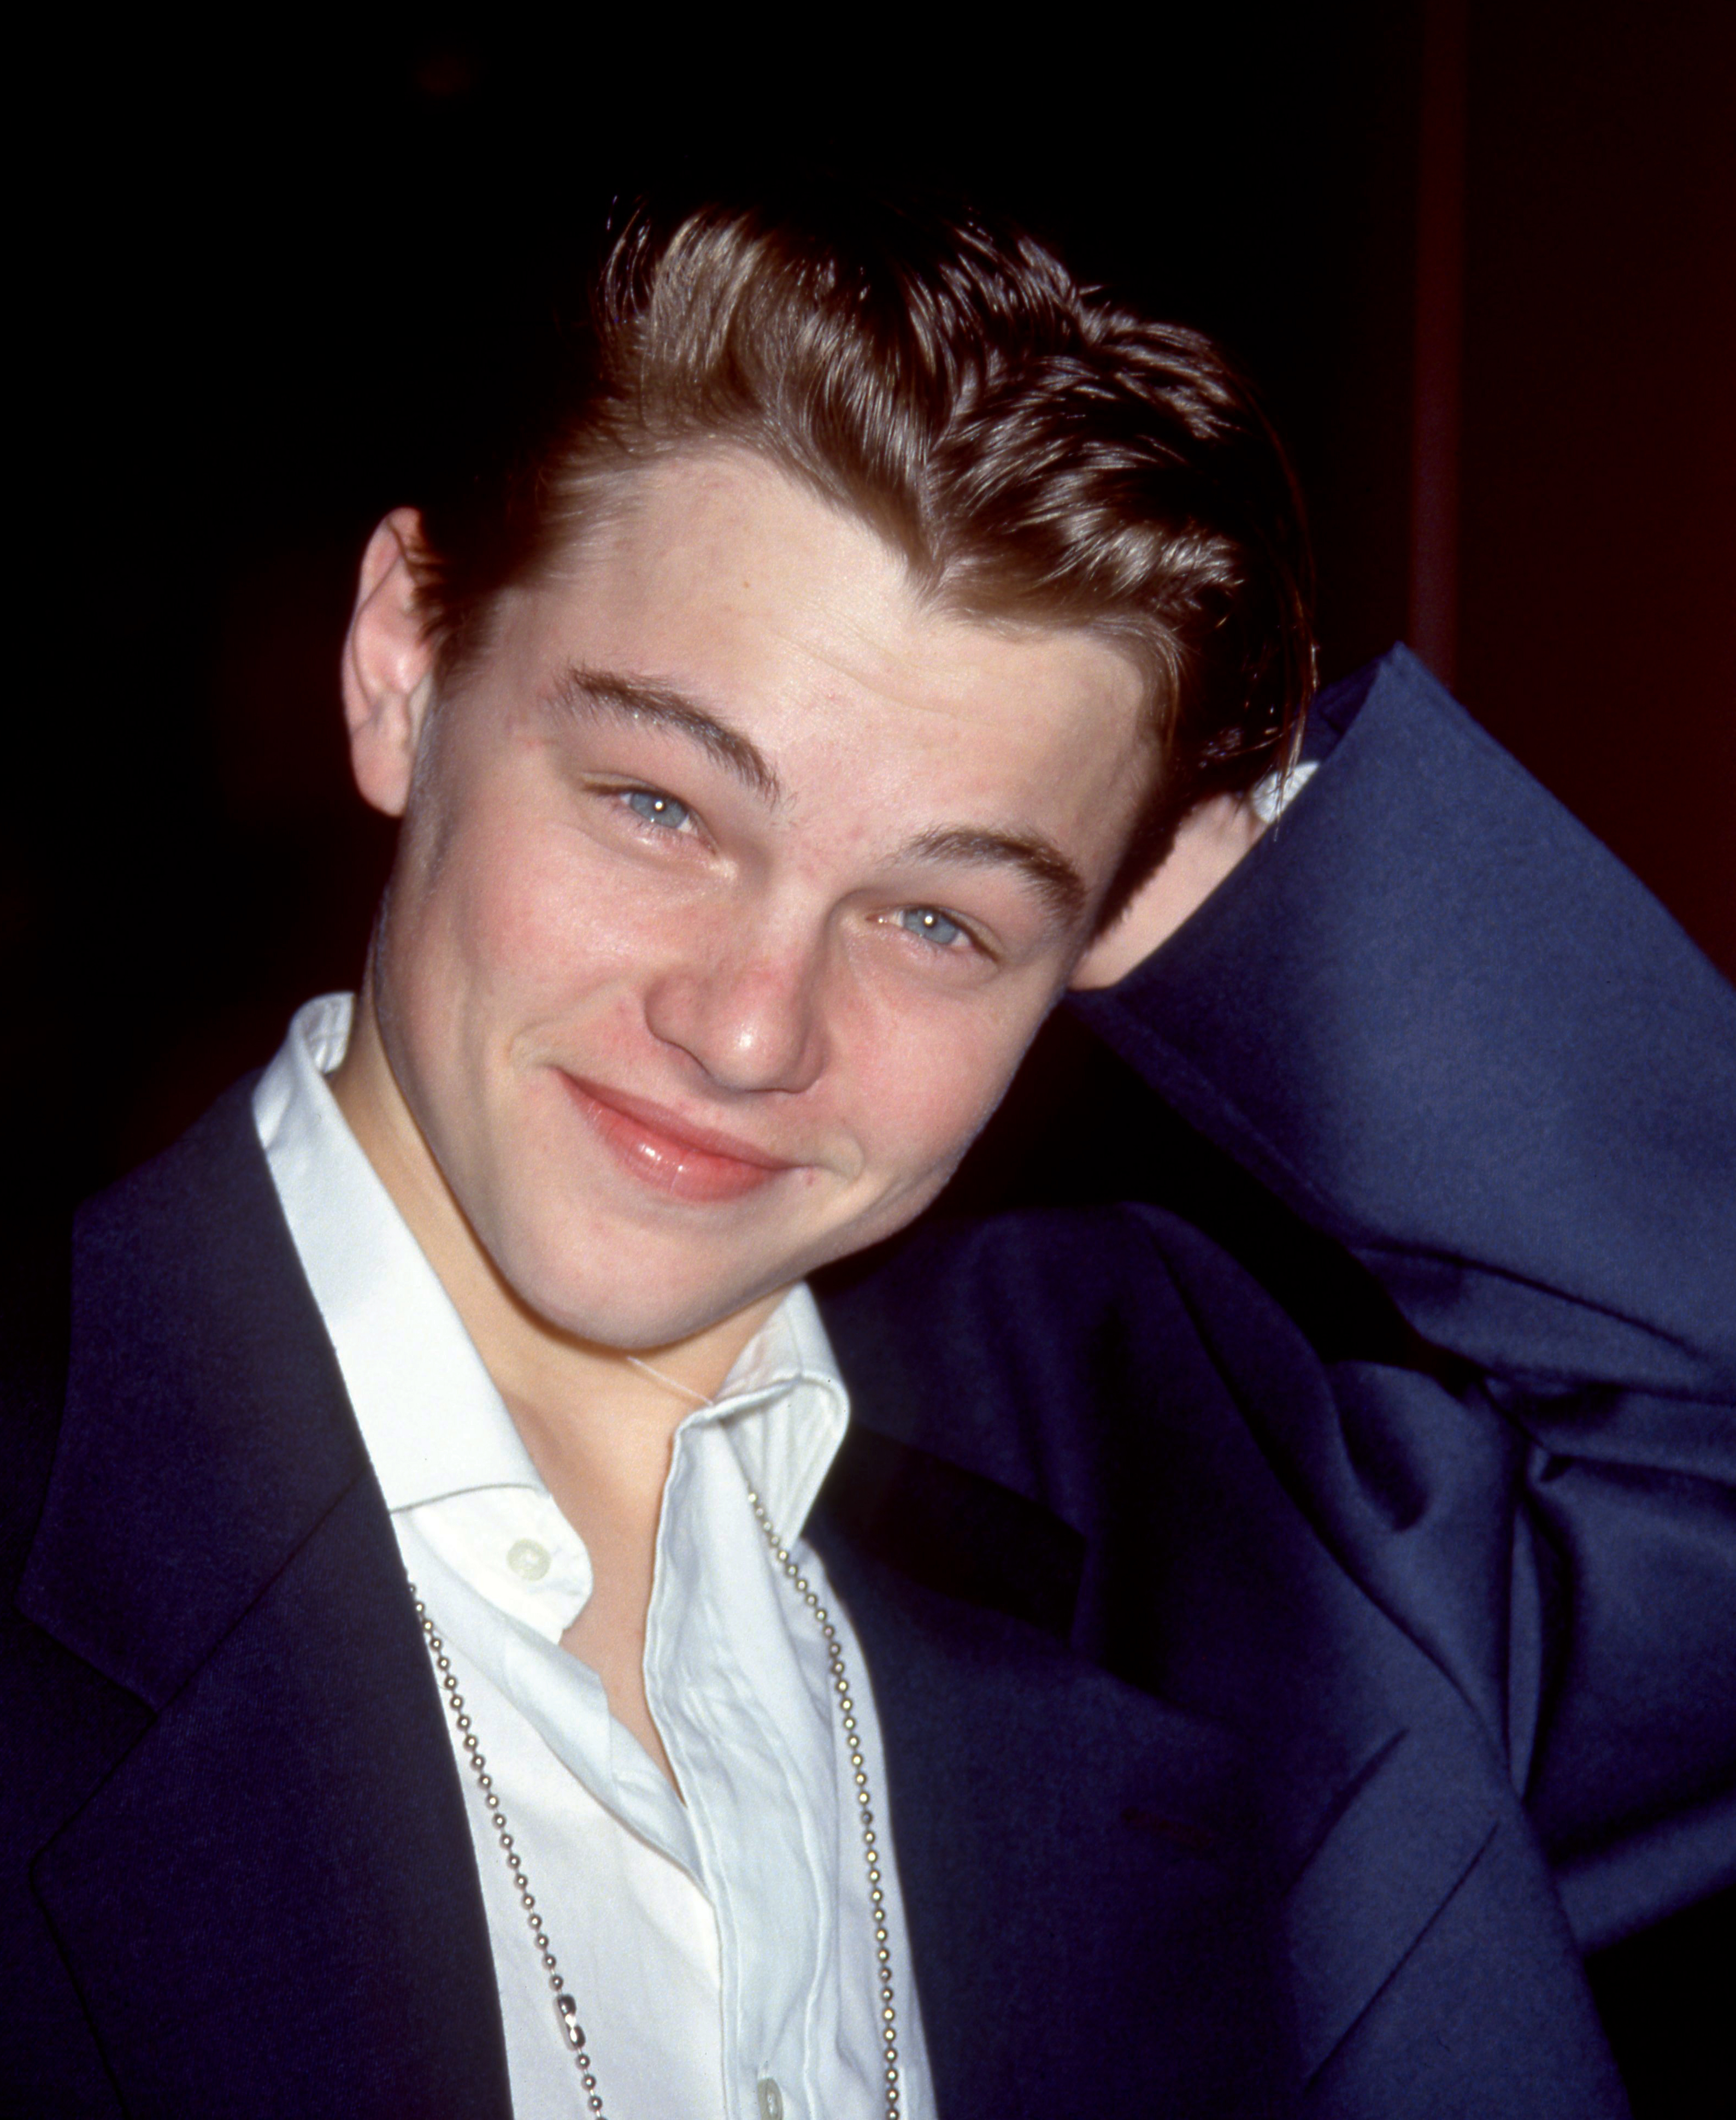 Leonardo DiCaprio à la première de "Blessures secrètes" à Los Angeles, 1993 | Source : Getty Images